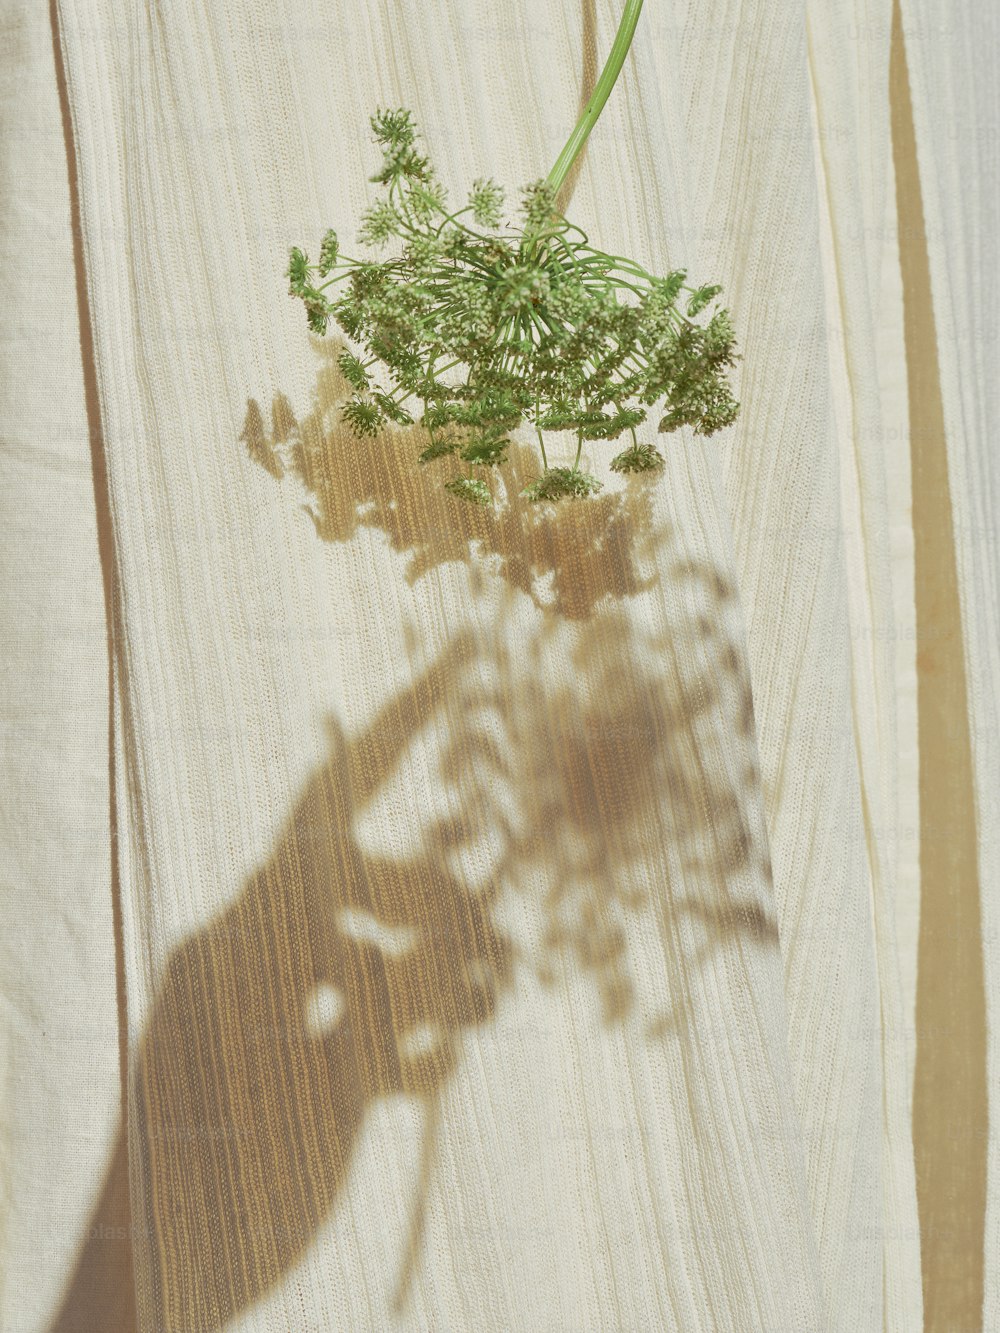 la sombra de una planta sobre una superficie de madera